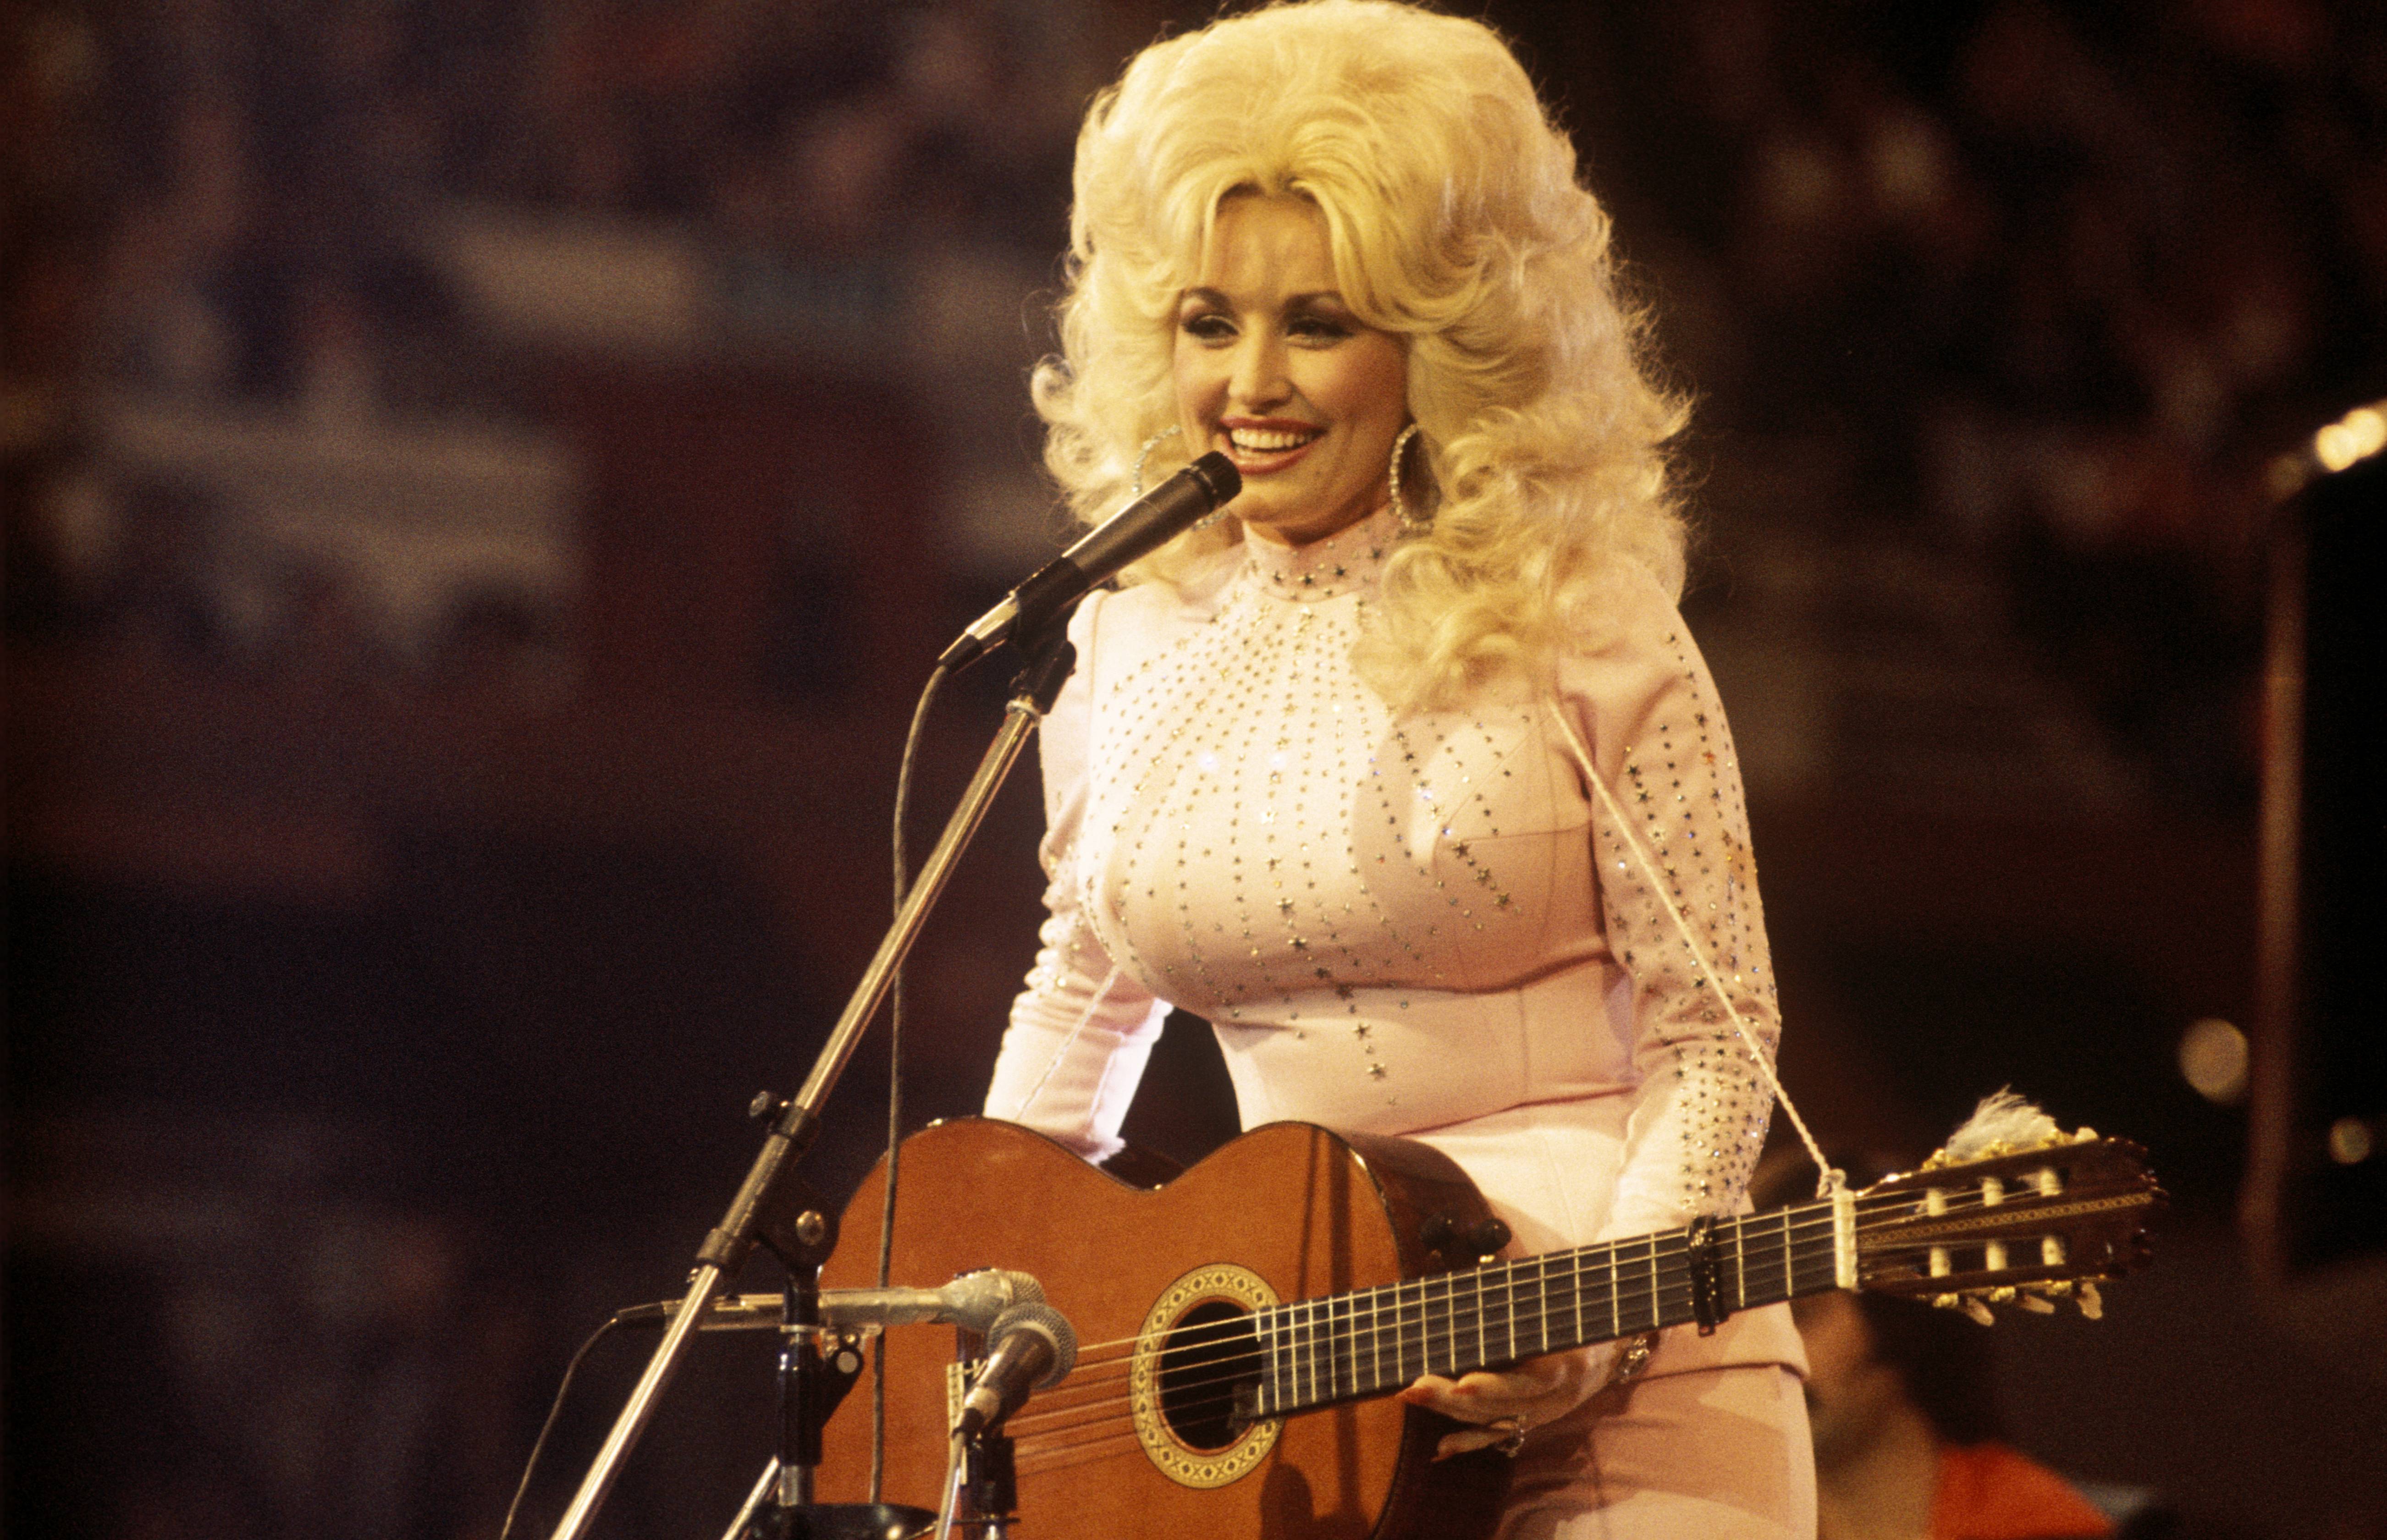 Dolly Parton pomogła swojej „inwalidzkiej” babci, gdy żadne inne wnuki by tego nie zrobiły - ona też zrobiła jej psikusa